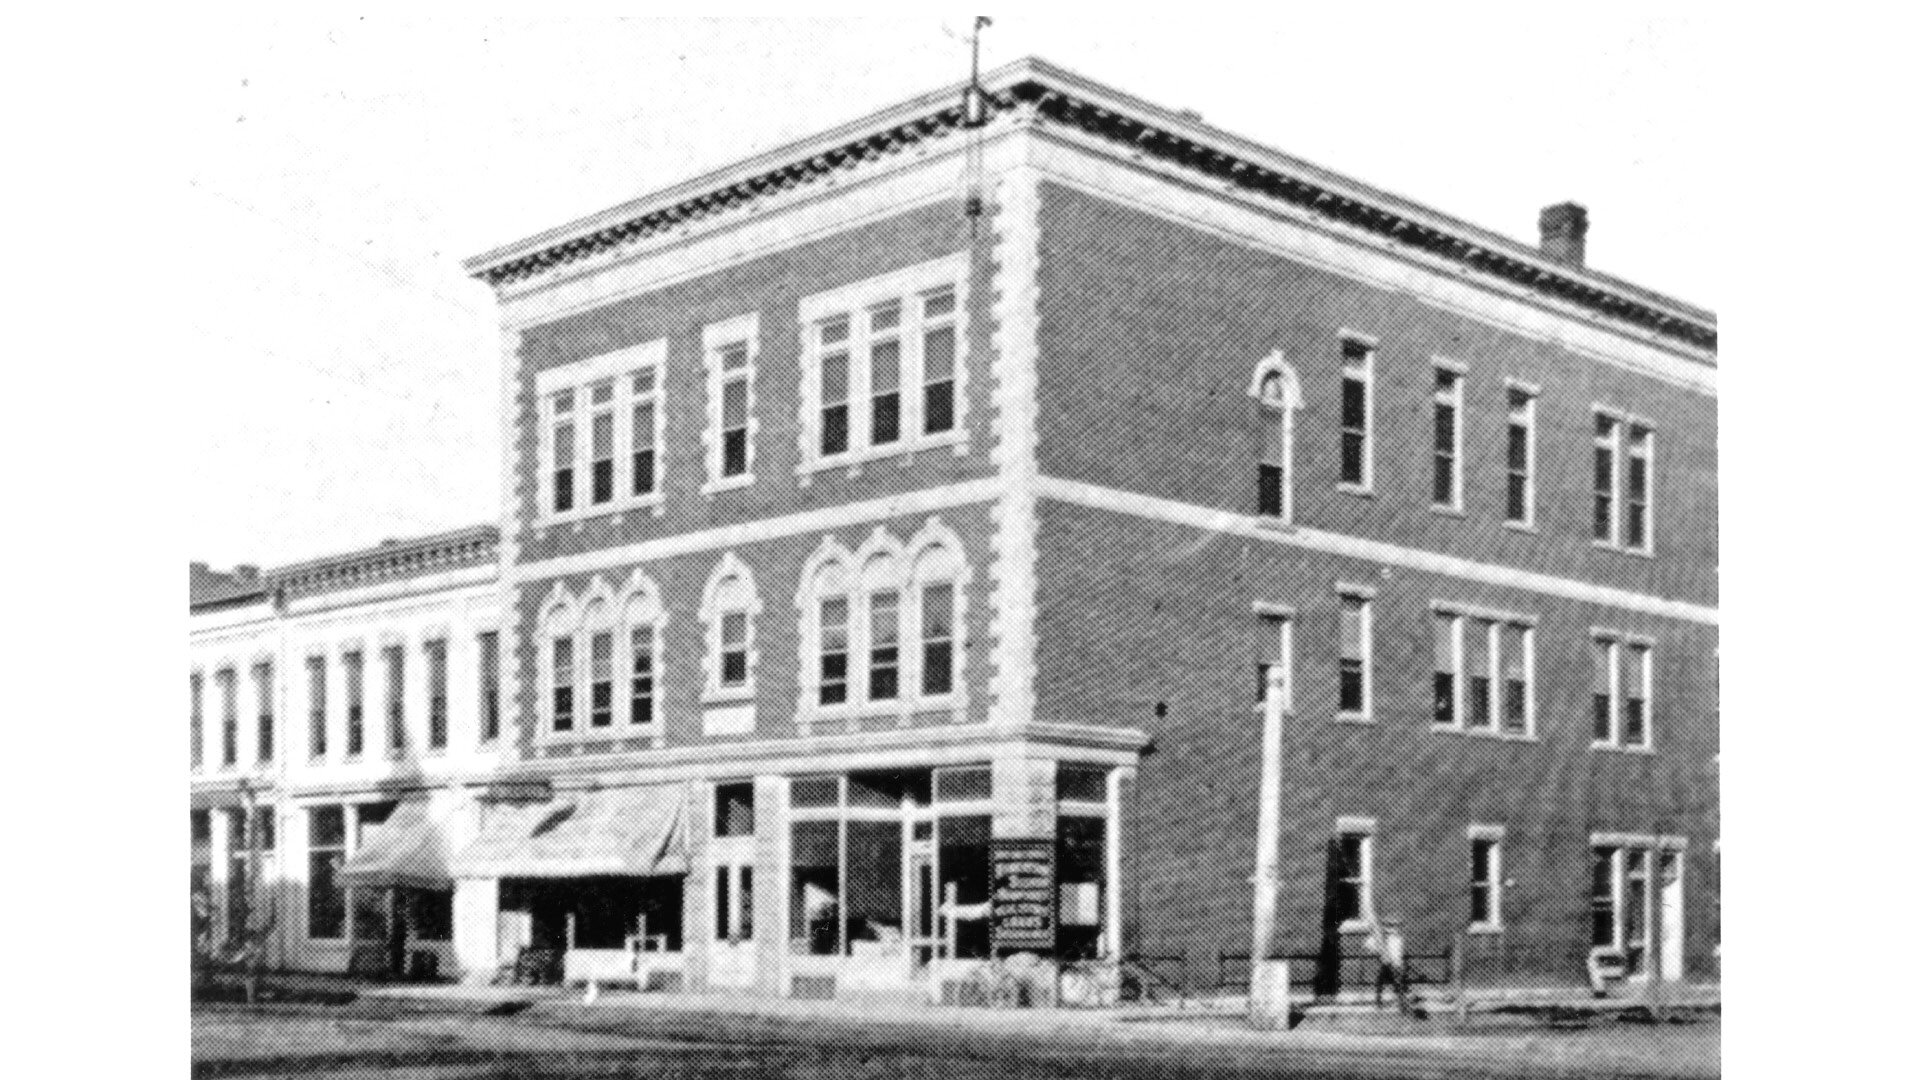 Elks Building c. 1908